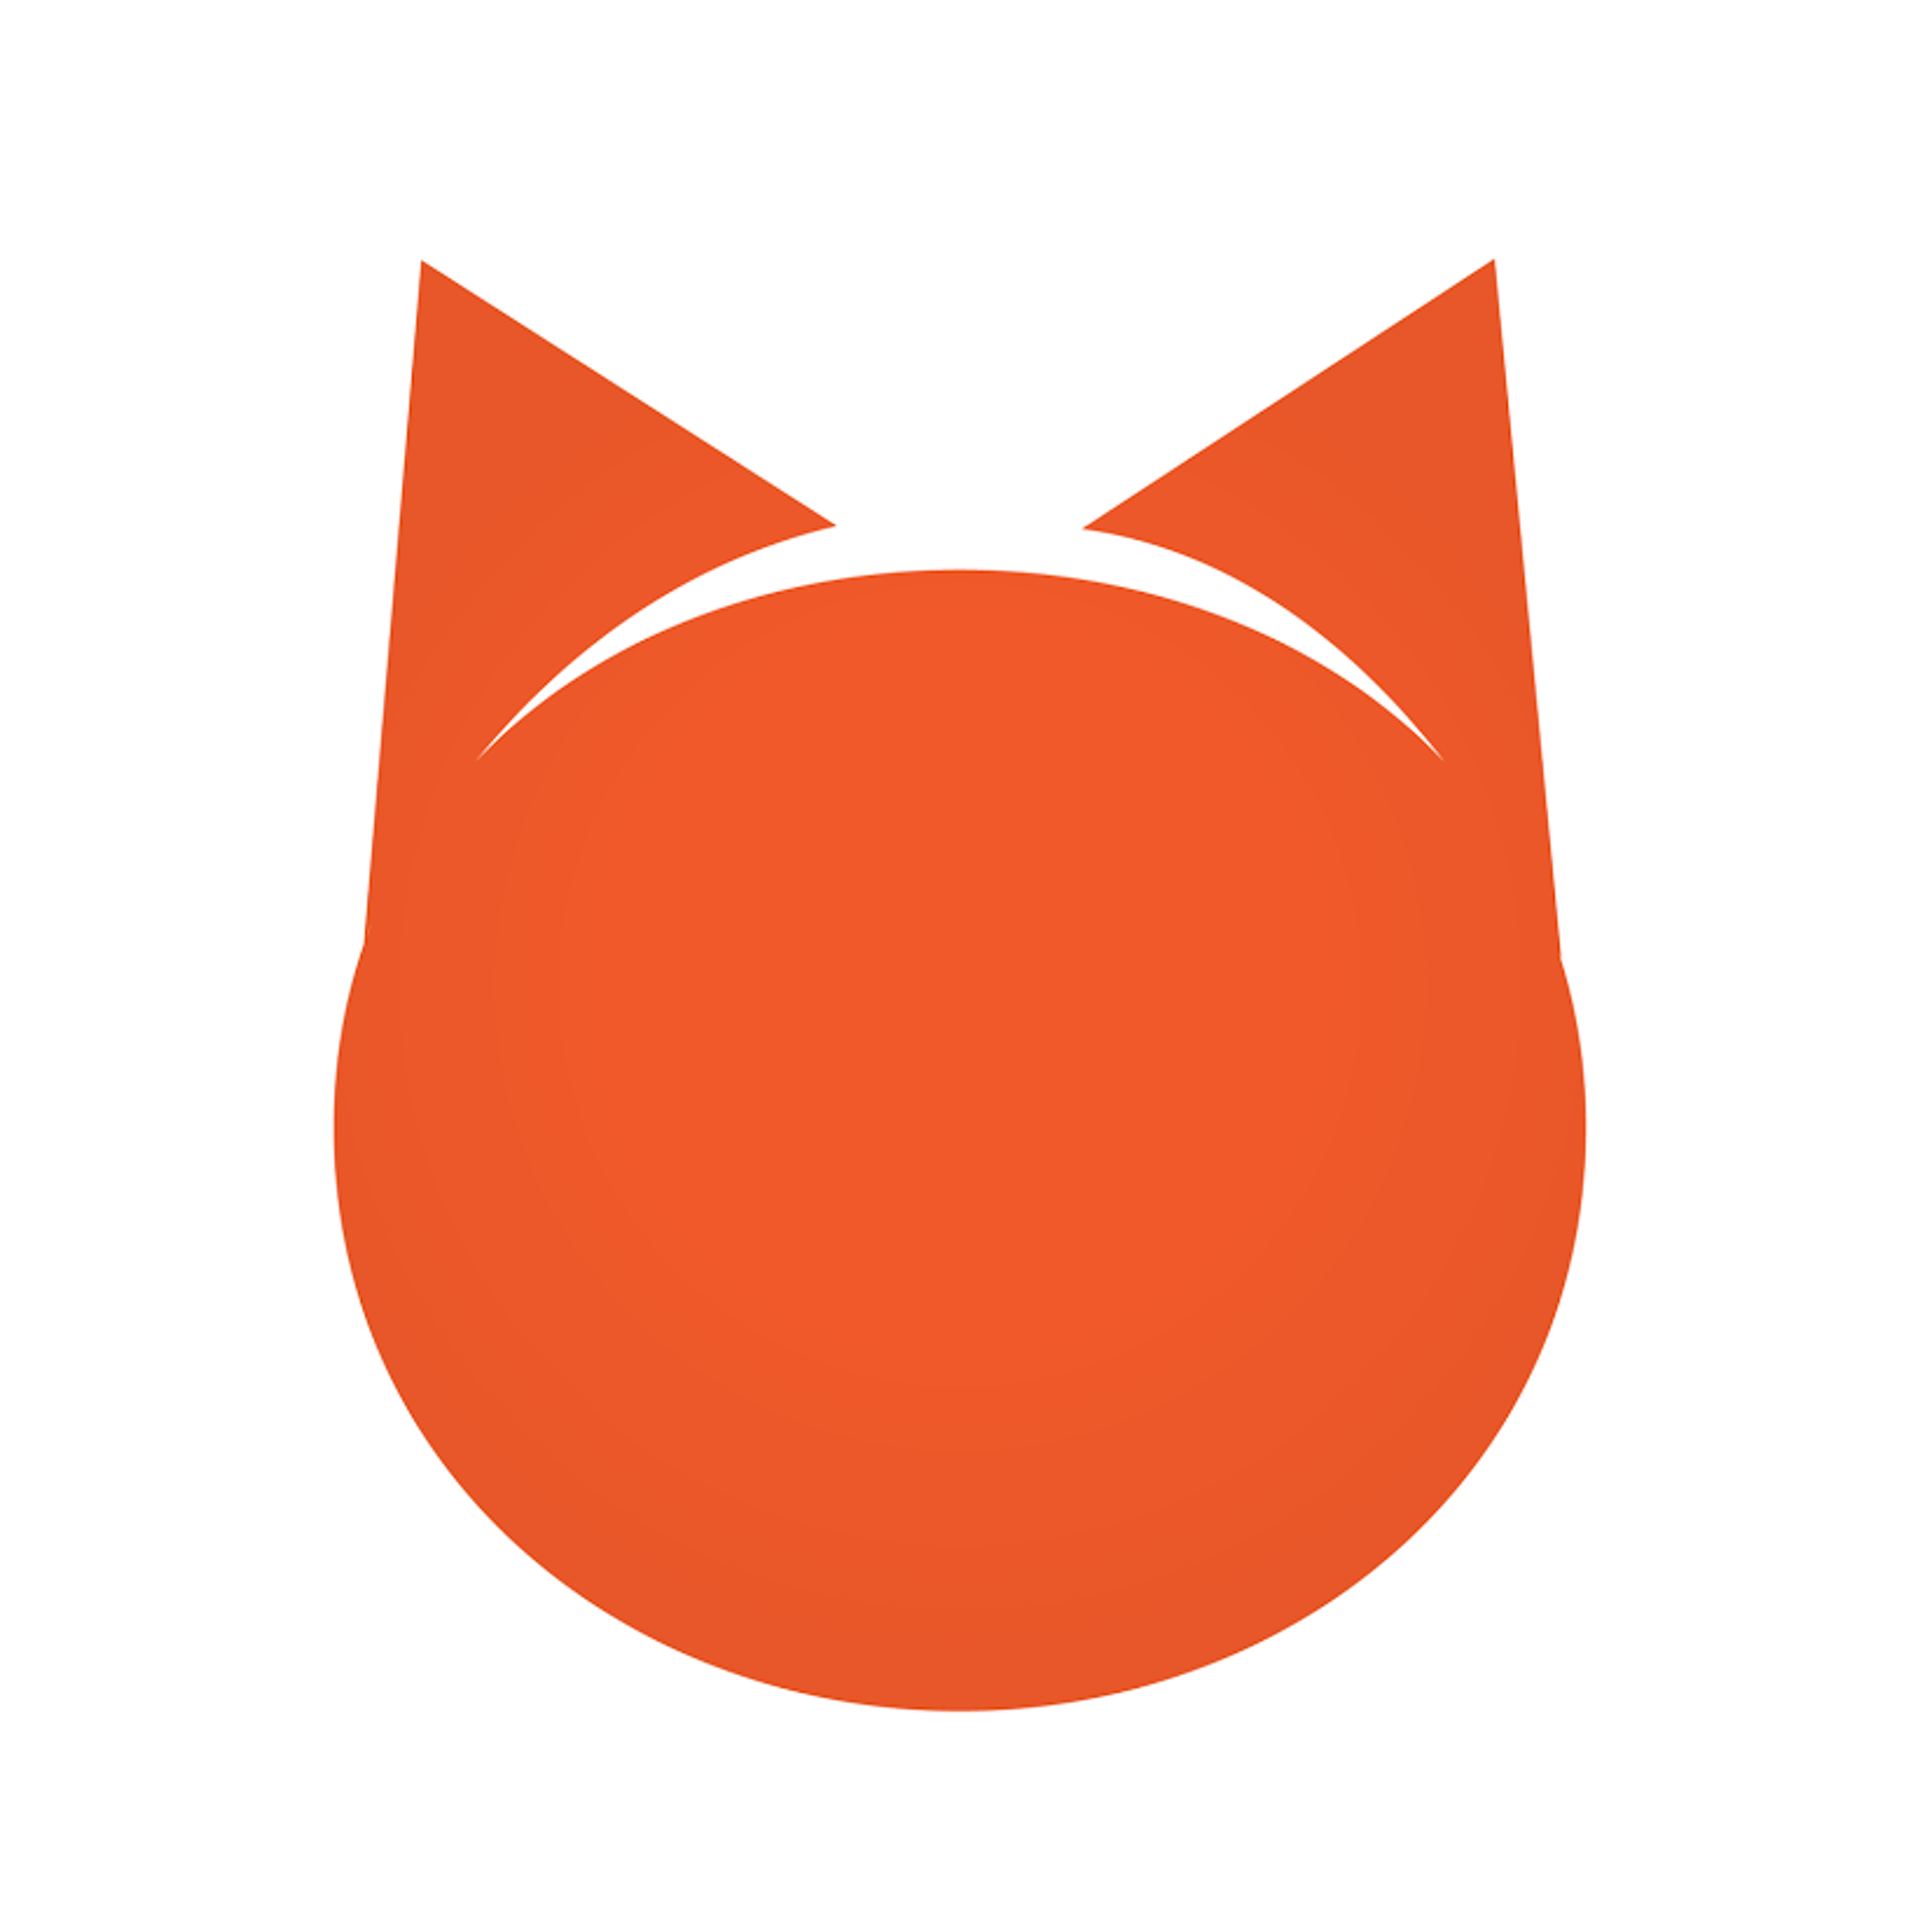 Petshop.ru лого. ПЕТШОП зоотовары. Pet shop зоомагазин логотип. Логотип петшопа.